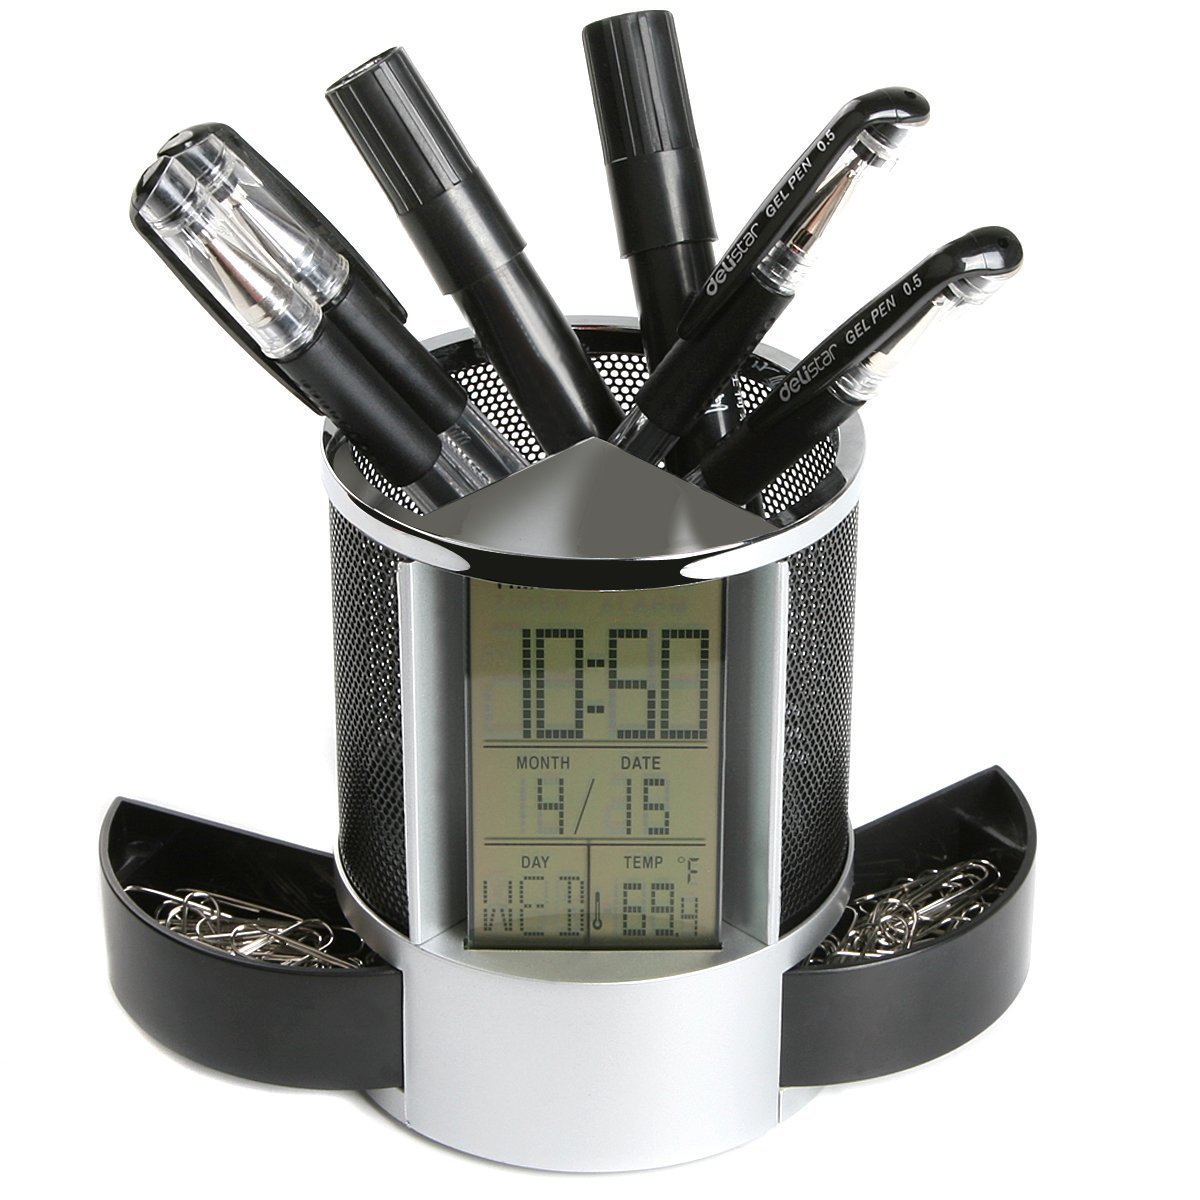 Loskii-DX-222-Colorful-Black-Digital-LED-Desk-Alarm-Clock-Mesh-Pen-Holder-Calendar-Timer-Thermometer-1152774